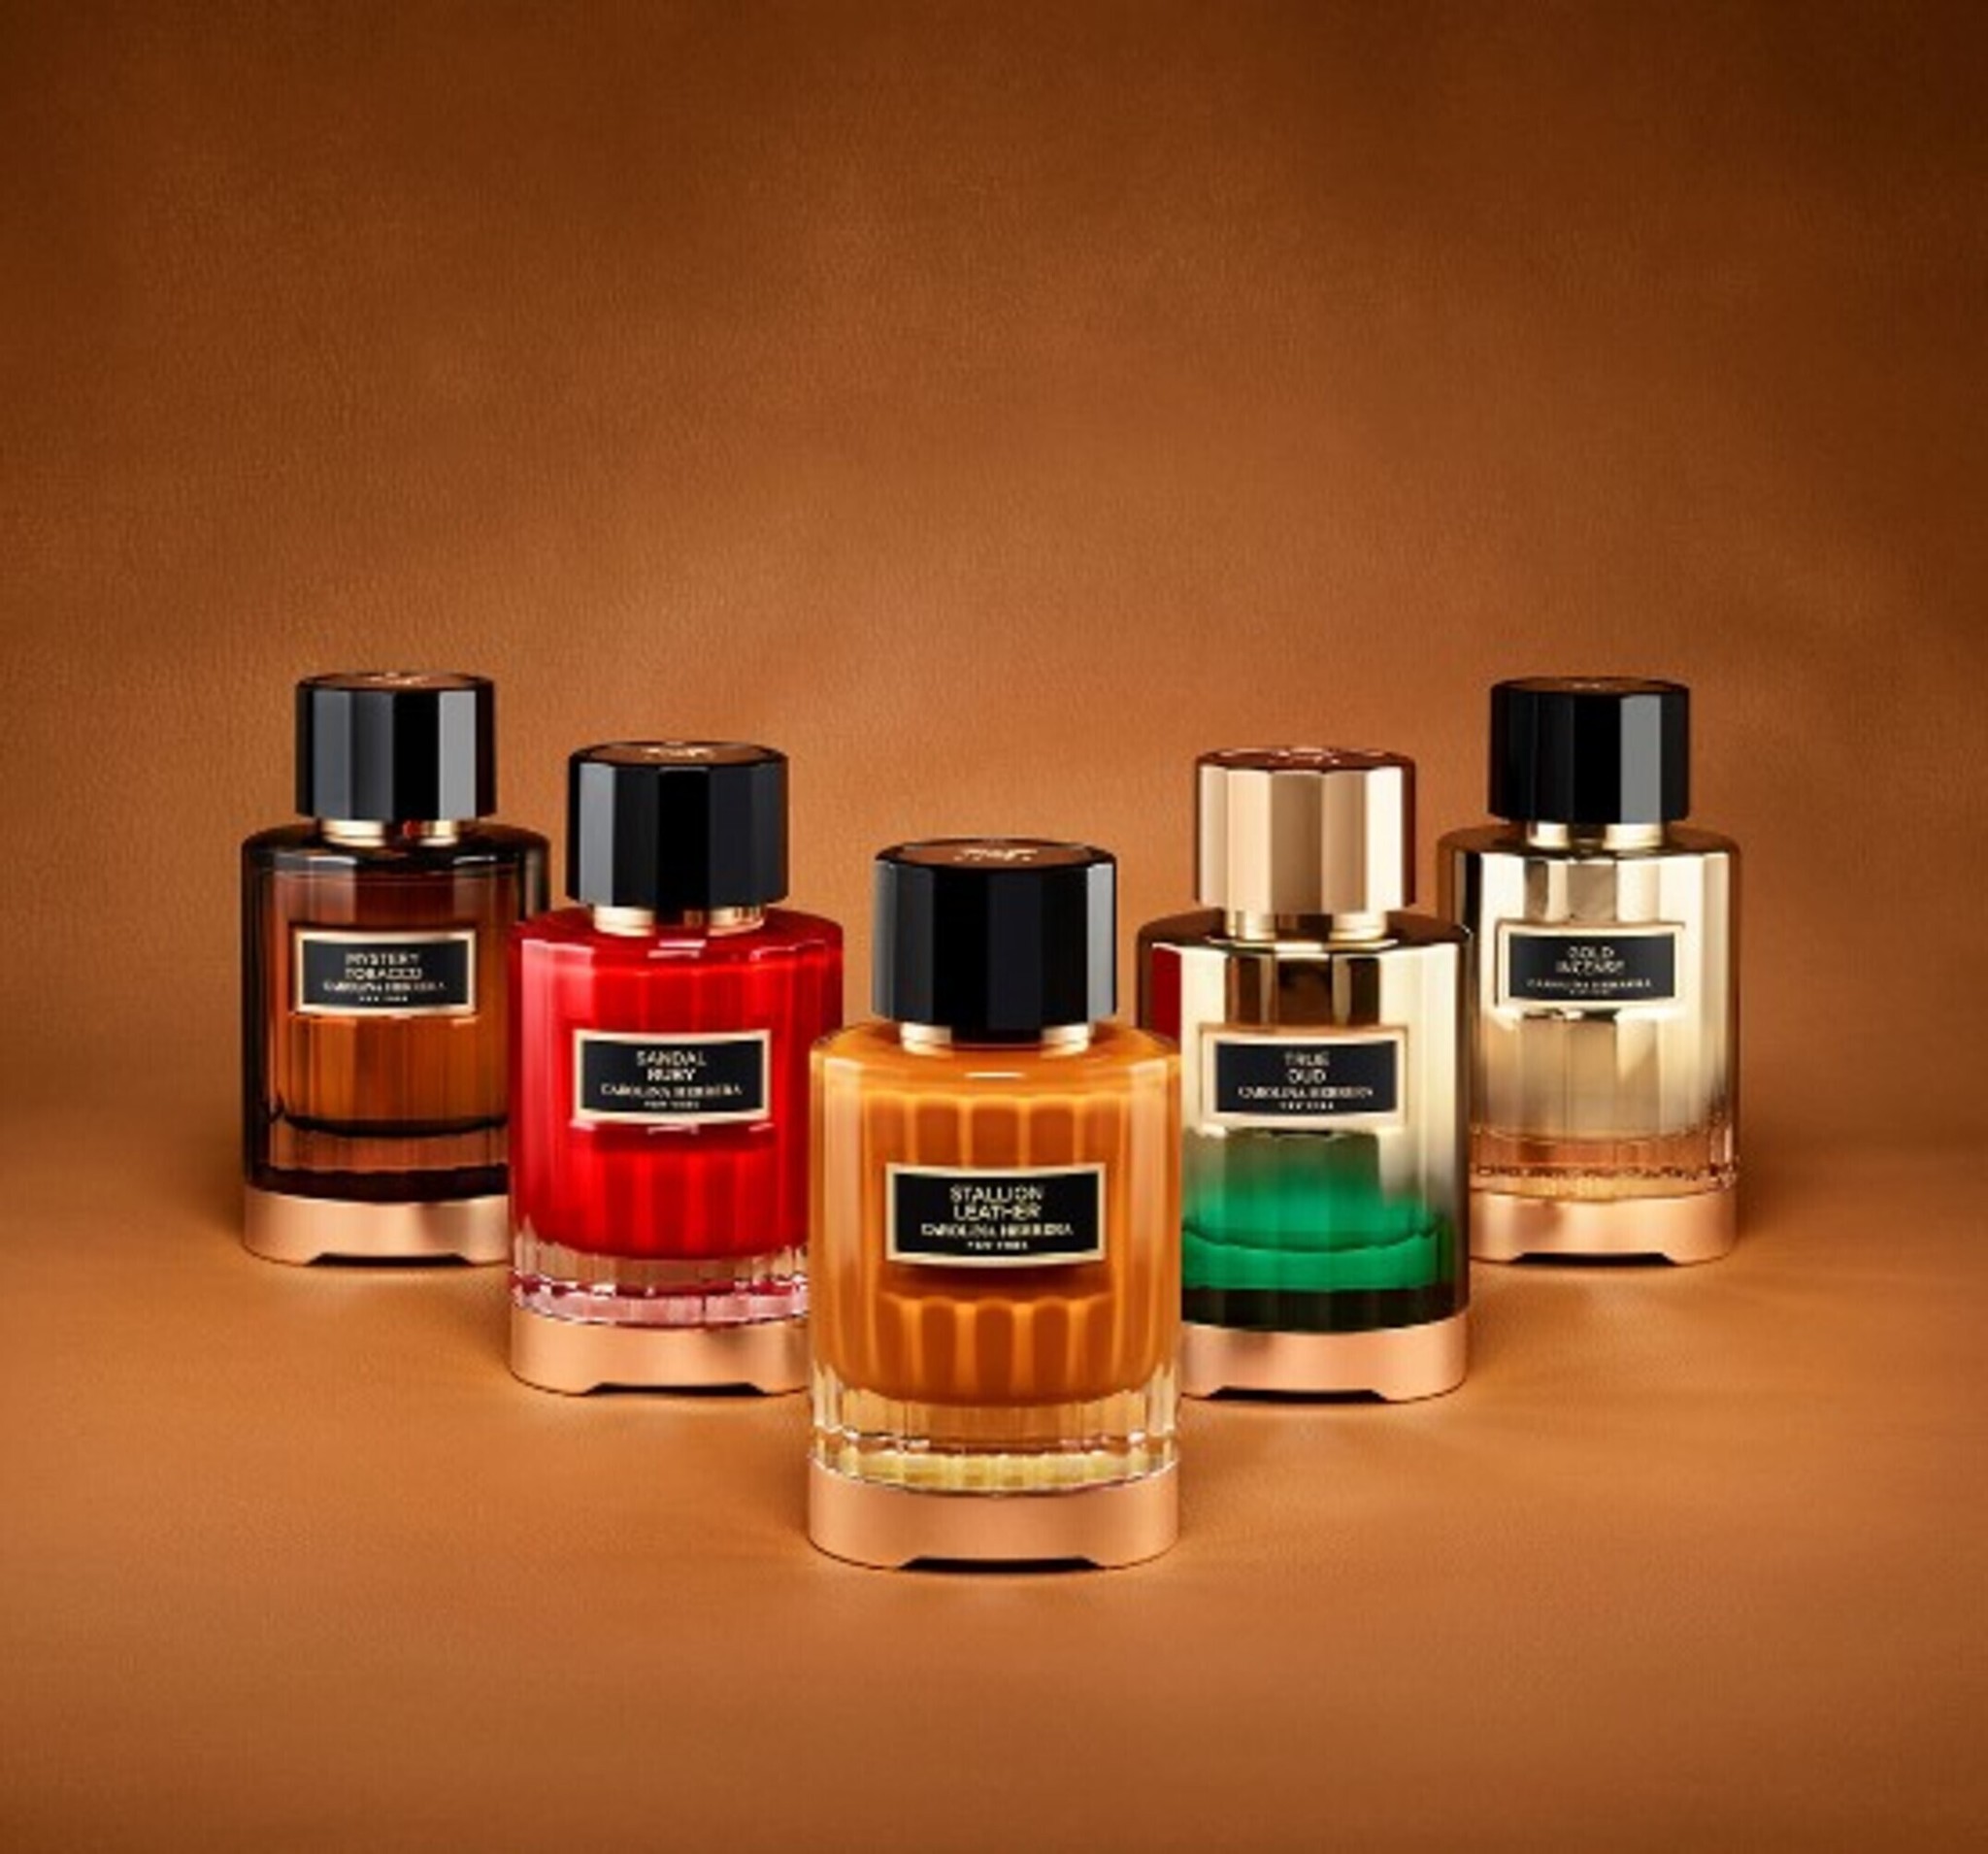 Puig gestiona la división de perfumes de Carolina Herrera. El primer perfume, Eau de Parfum, salió al mercado en 1988 y fue un éxito en ventas. En la actualidad, la marca cuenta con más de 20 fragancias que se comercializan en 100 países de todo el mundo.